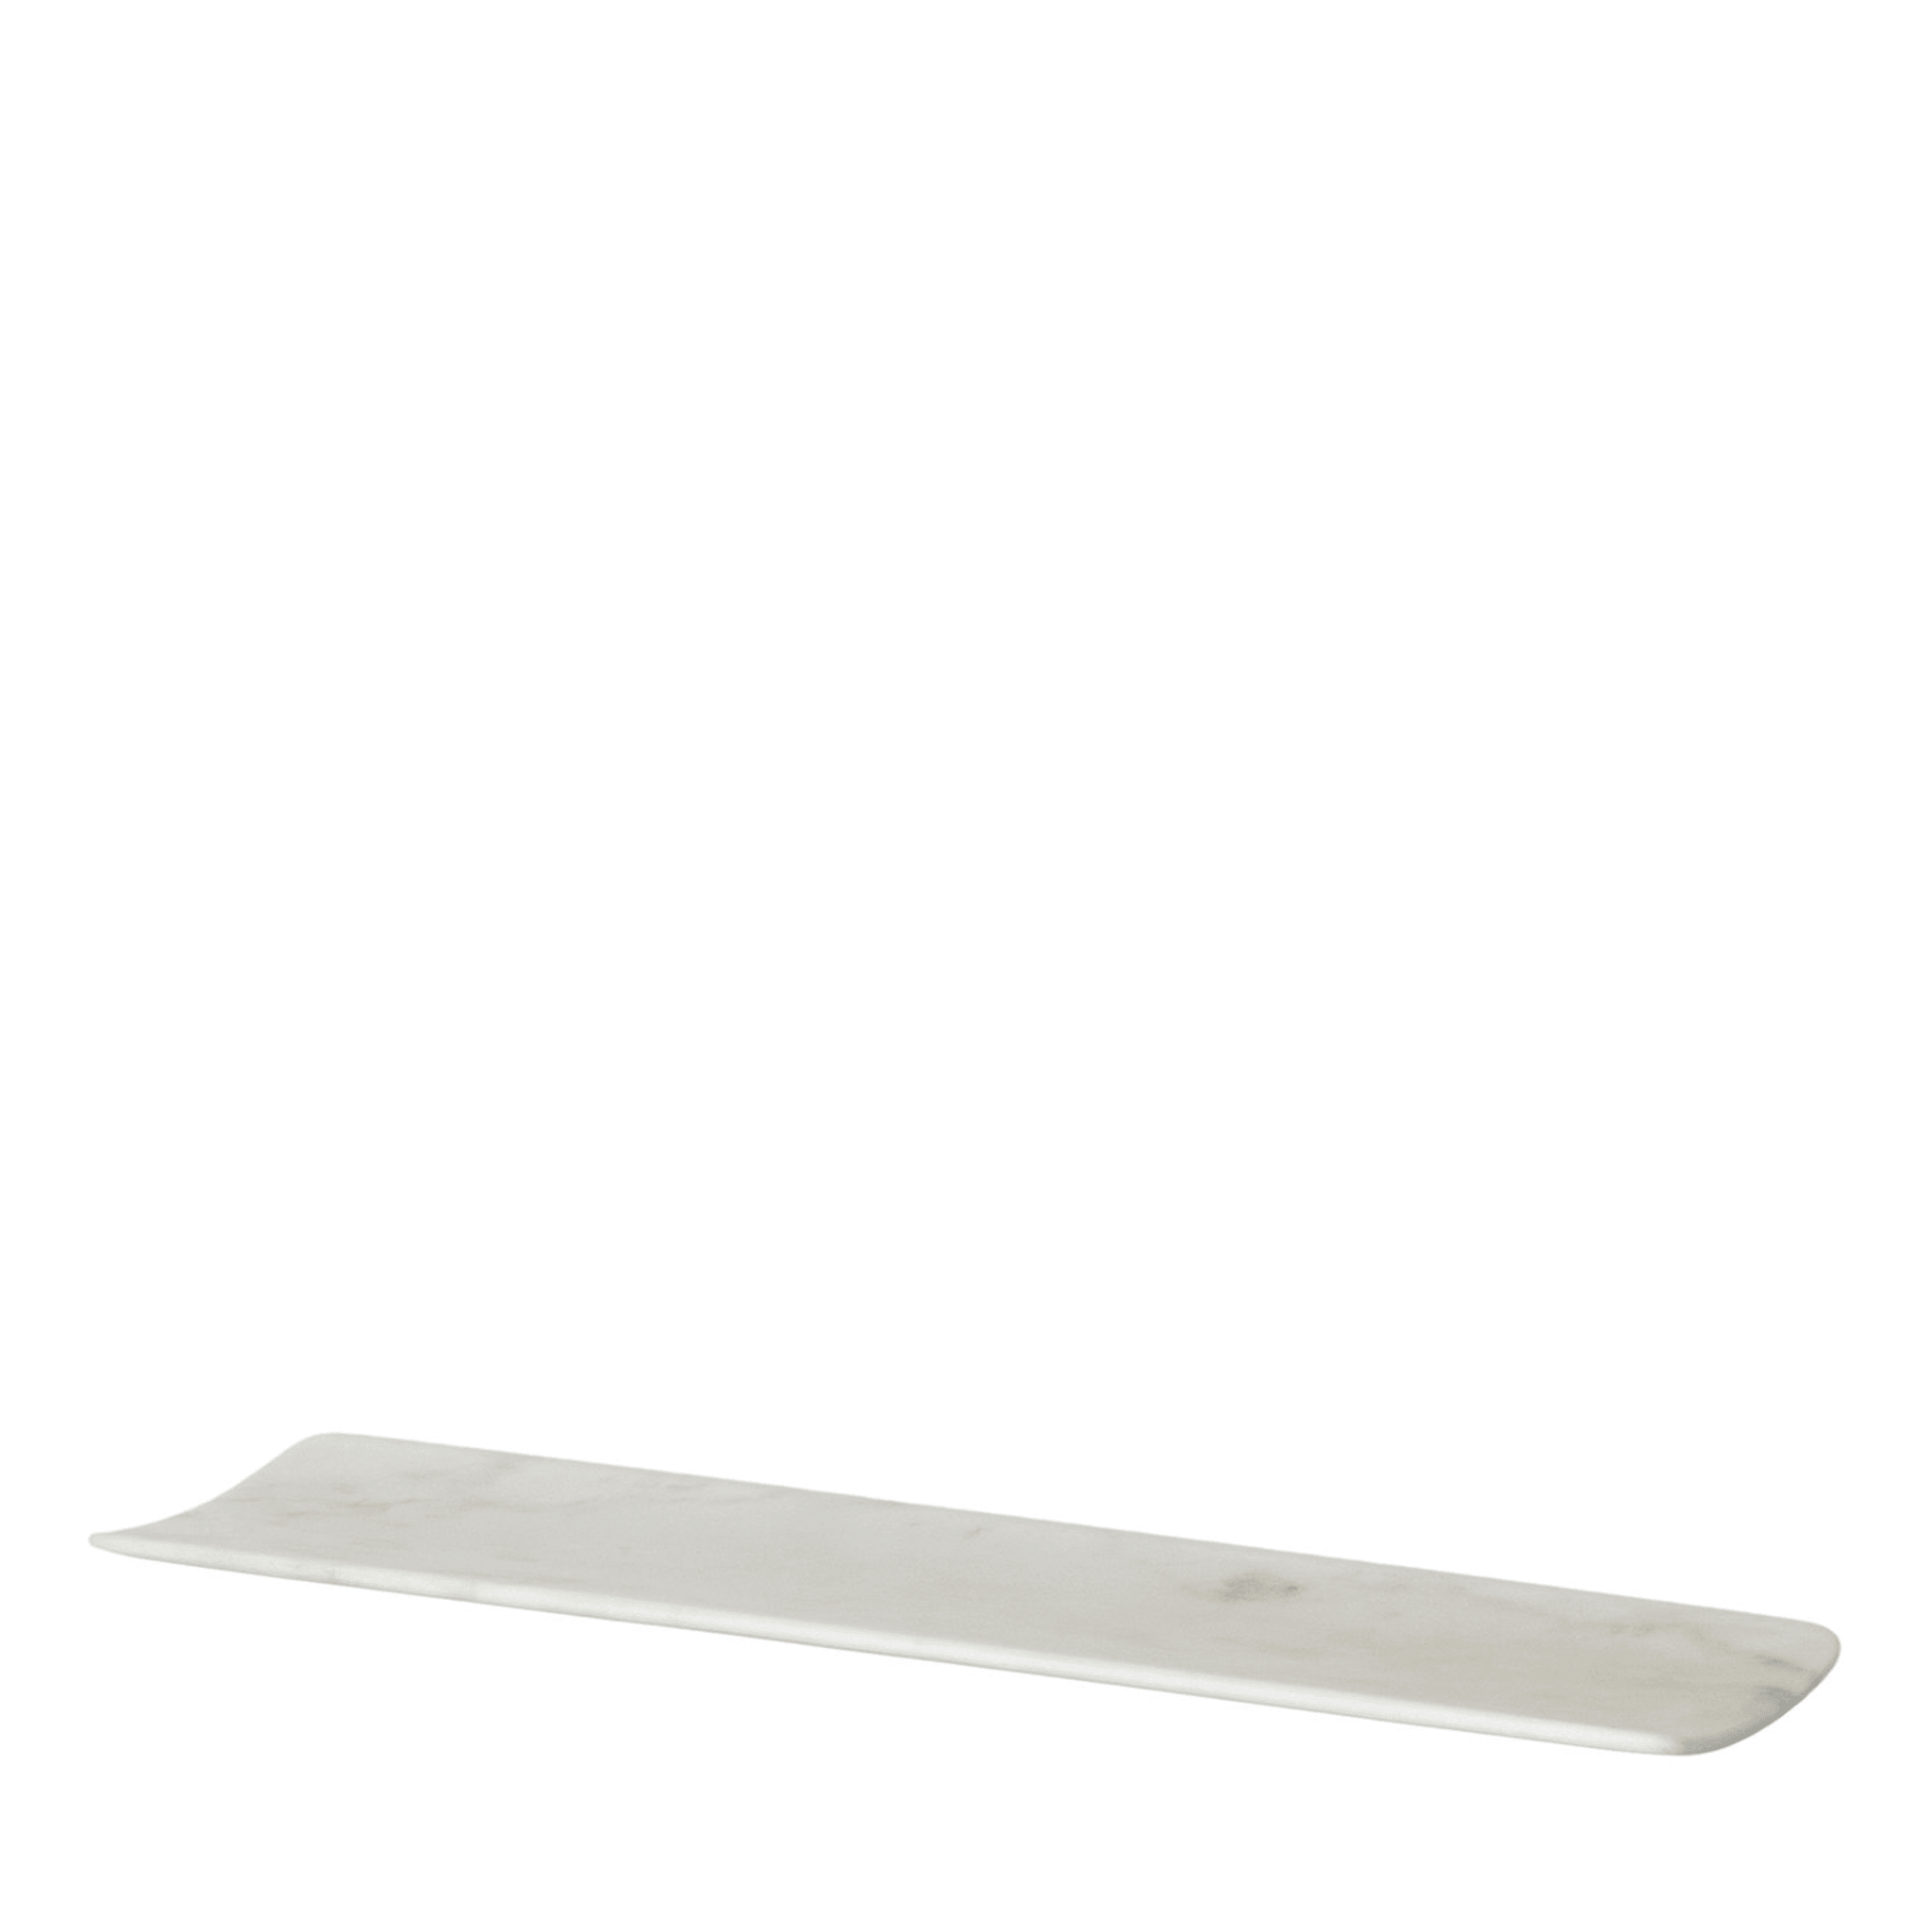 Curvato Medium Weißes Carrara-Tablett von Studioformart - Hauptansicht